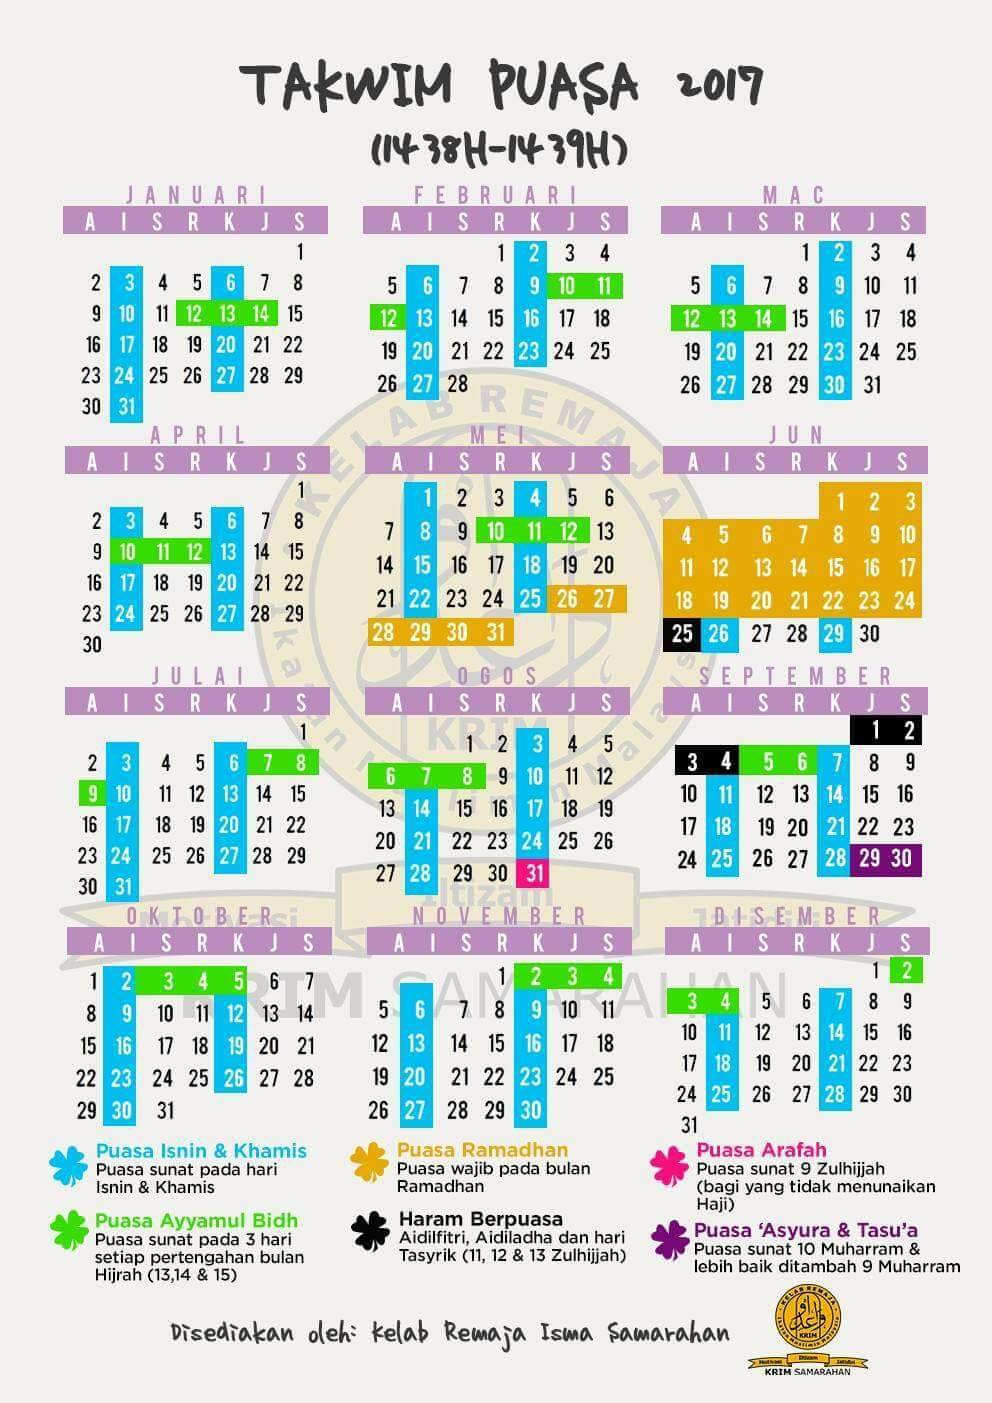 Kalendar Puasa Sunat Dan Wajib 2018 - Permohonan.my